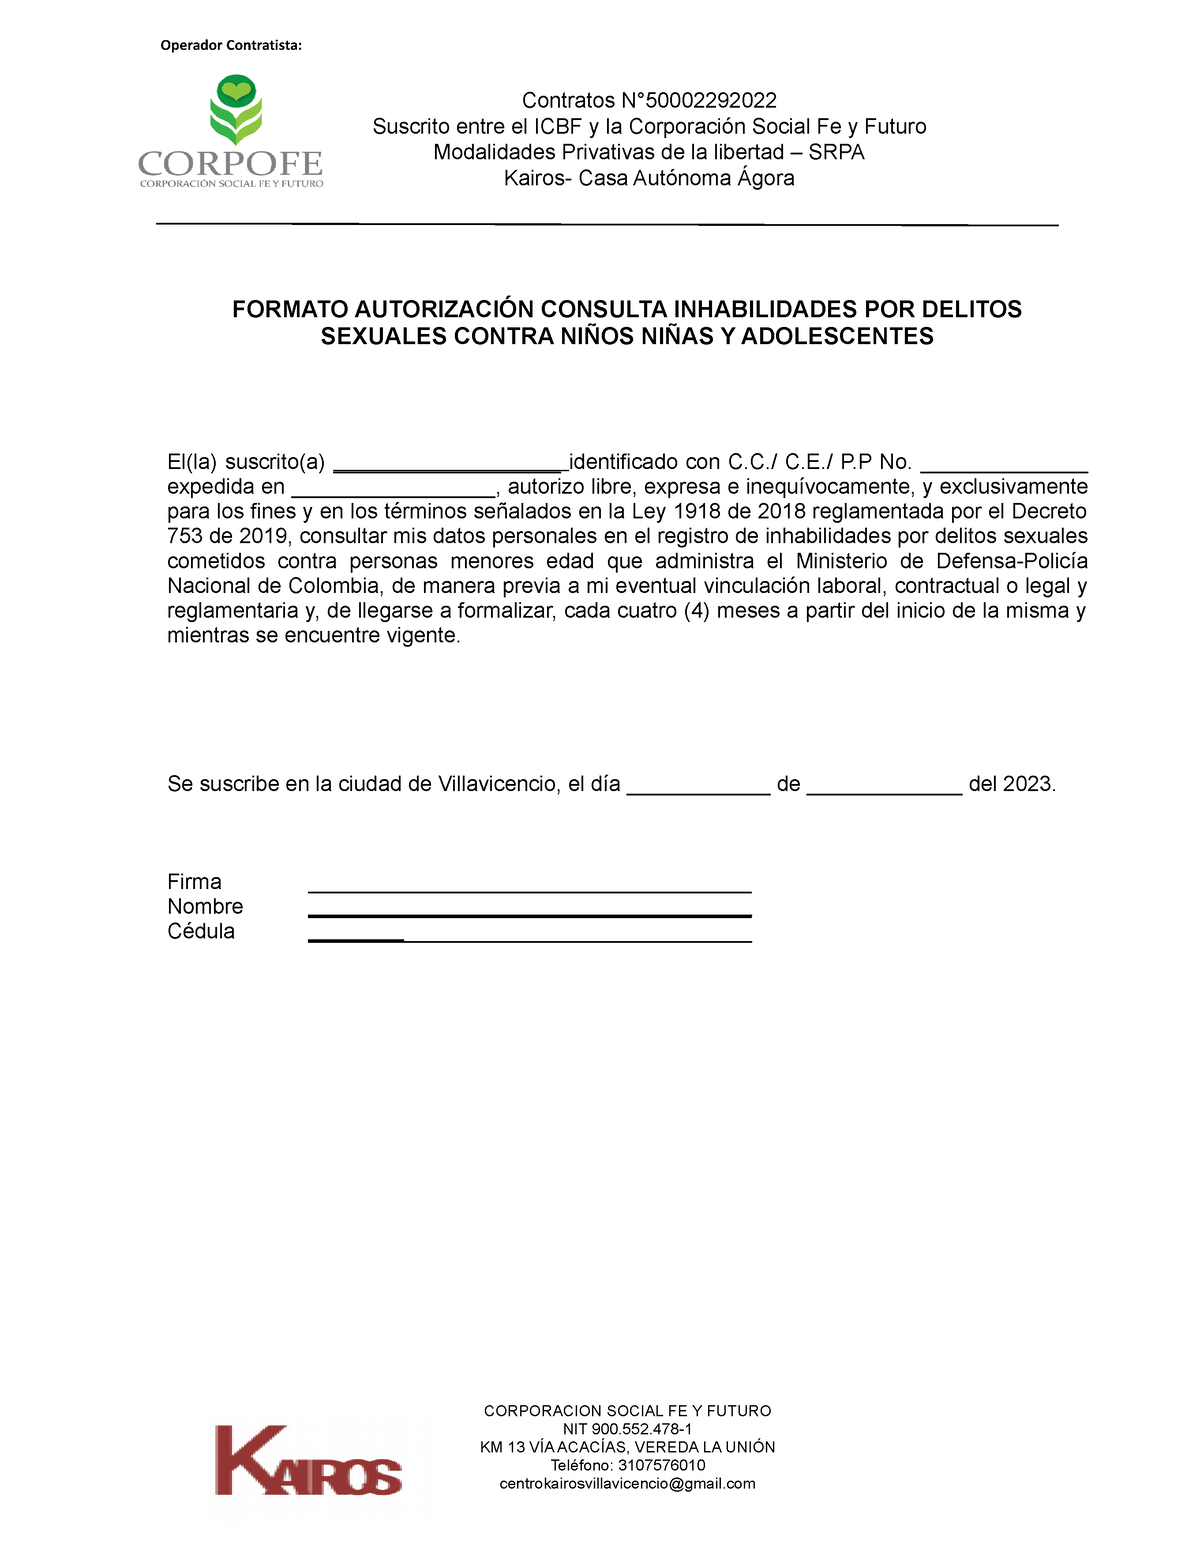 Formato Proteccion De Datos Formato AutorizaciÓn Consulta 9808